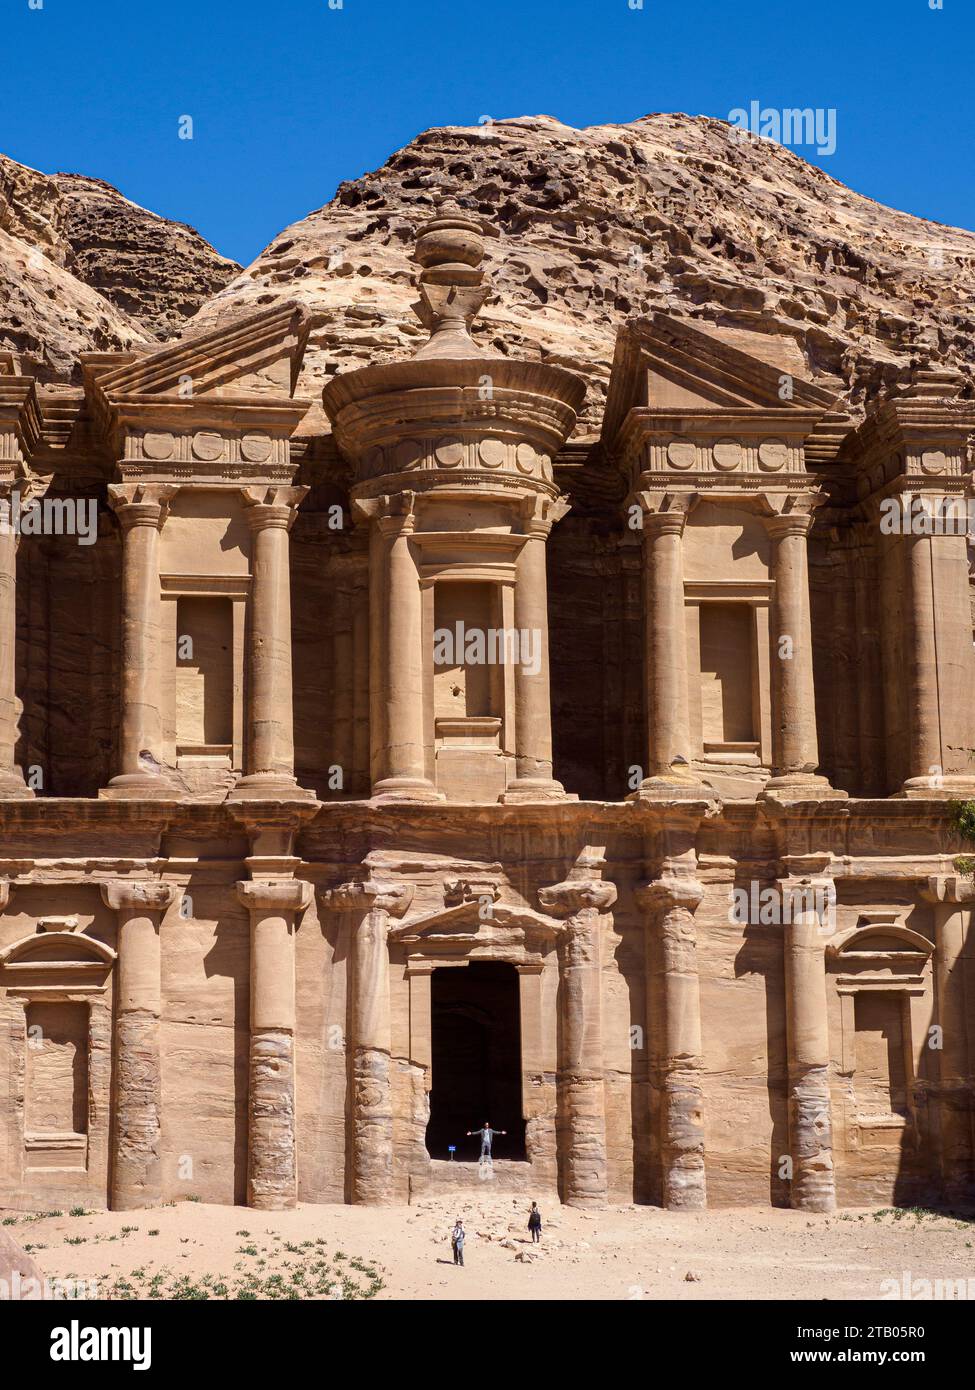 Il monastero di Petra (al Dayr), il parco archeologico di Petra, un sito patrimonio dell'umanità dell'UNESCO, 7 nuove meraviglie del mondo, Giordania. Foto Stock